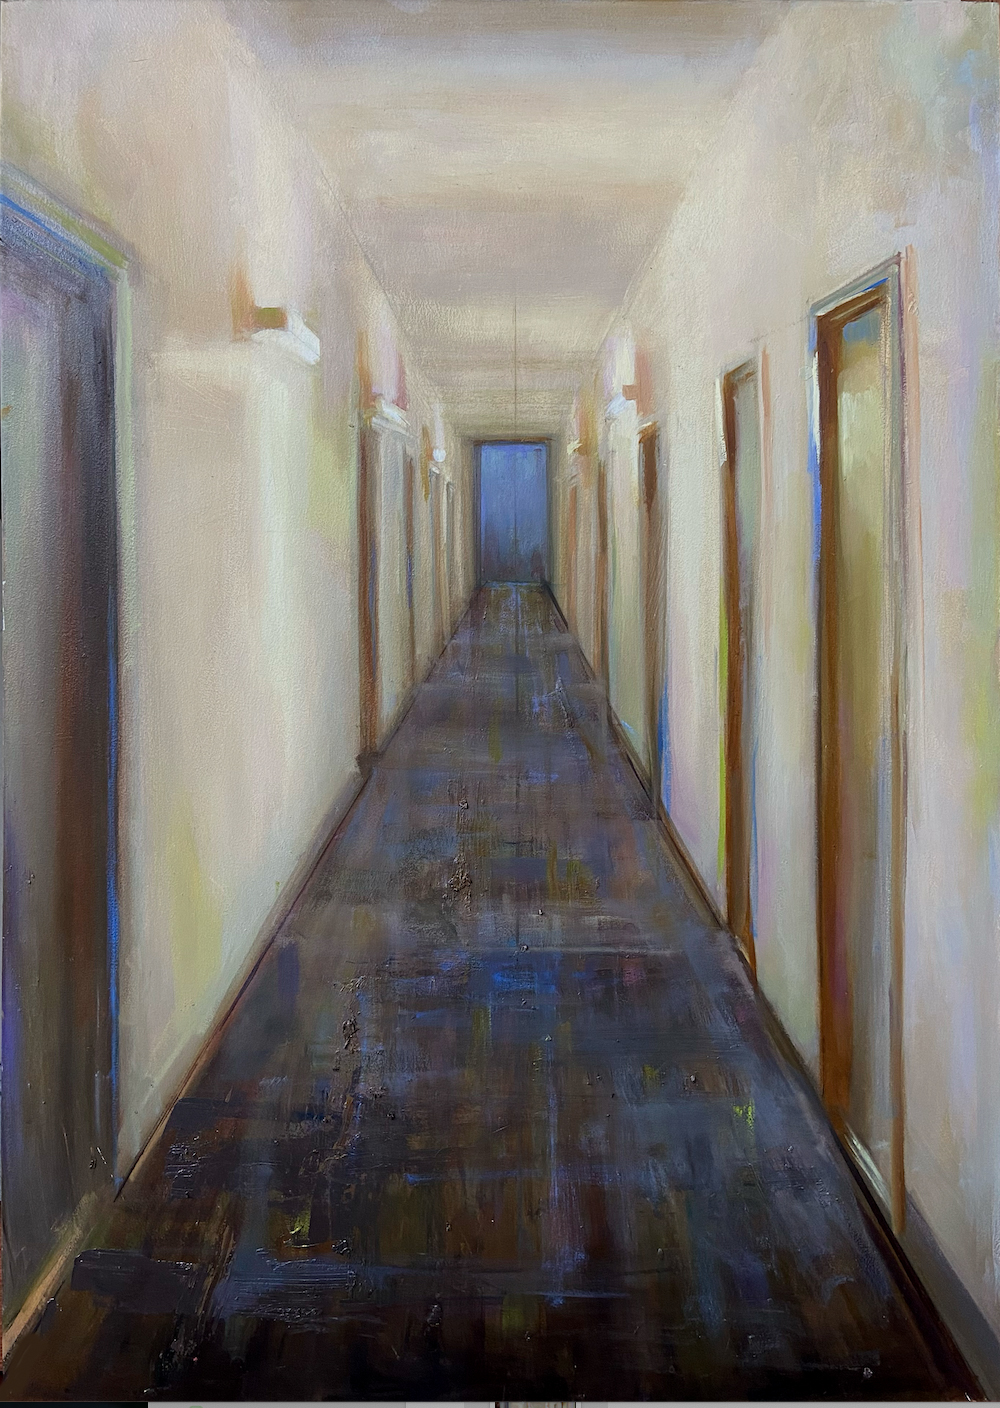 "Interior 2" by Juliette Aristides